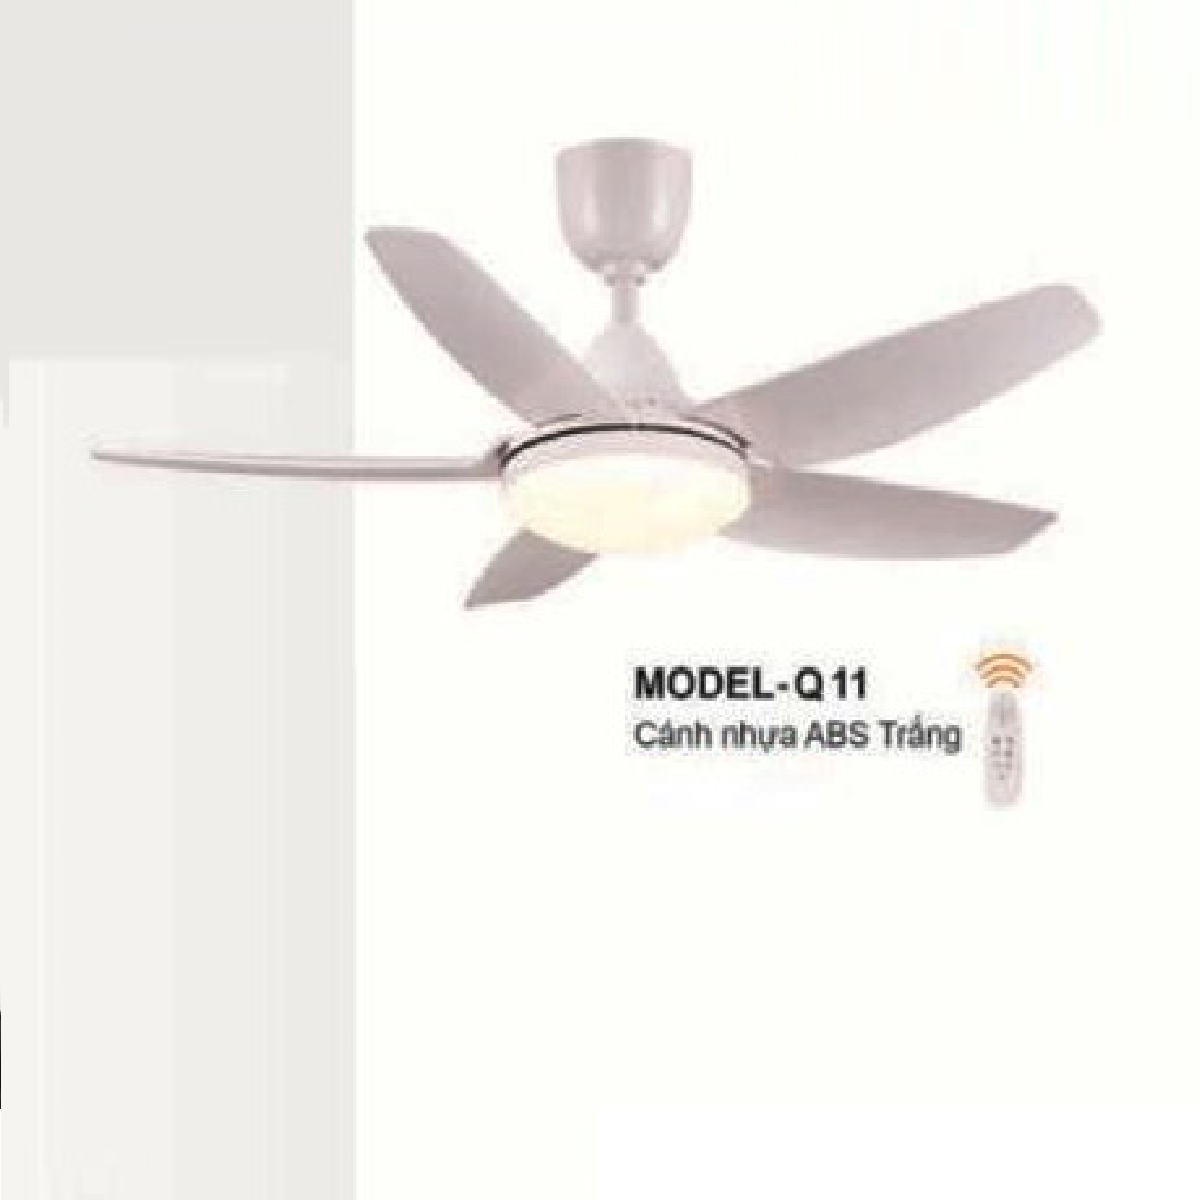 E - MODEL - Q11: Quạt trần đèn LED 5 cánh nhựa ABS màu Trắng